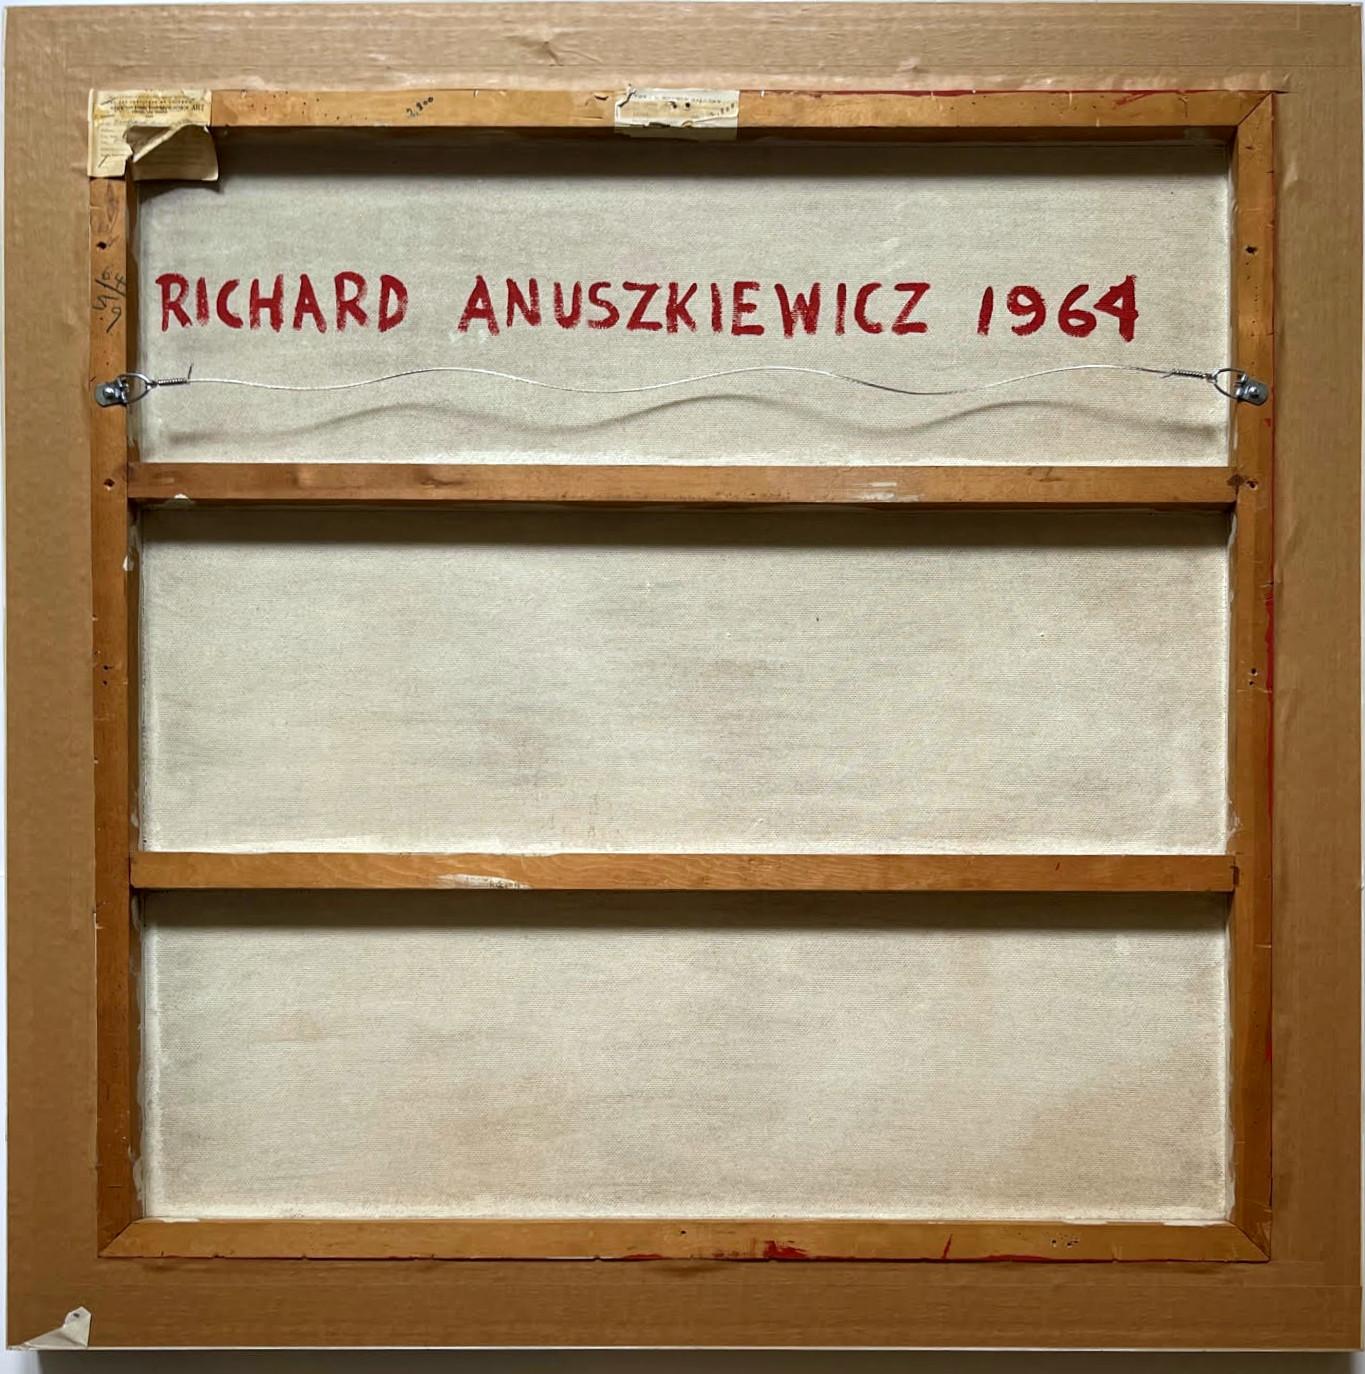 richard anuszkiewicz